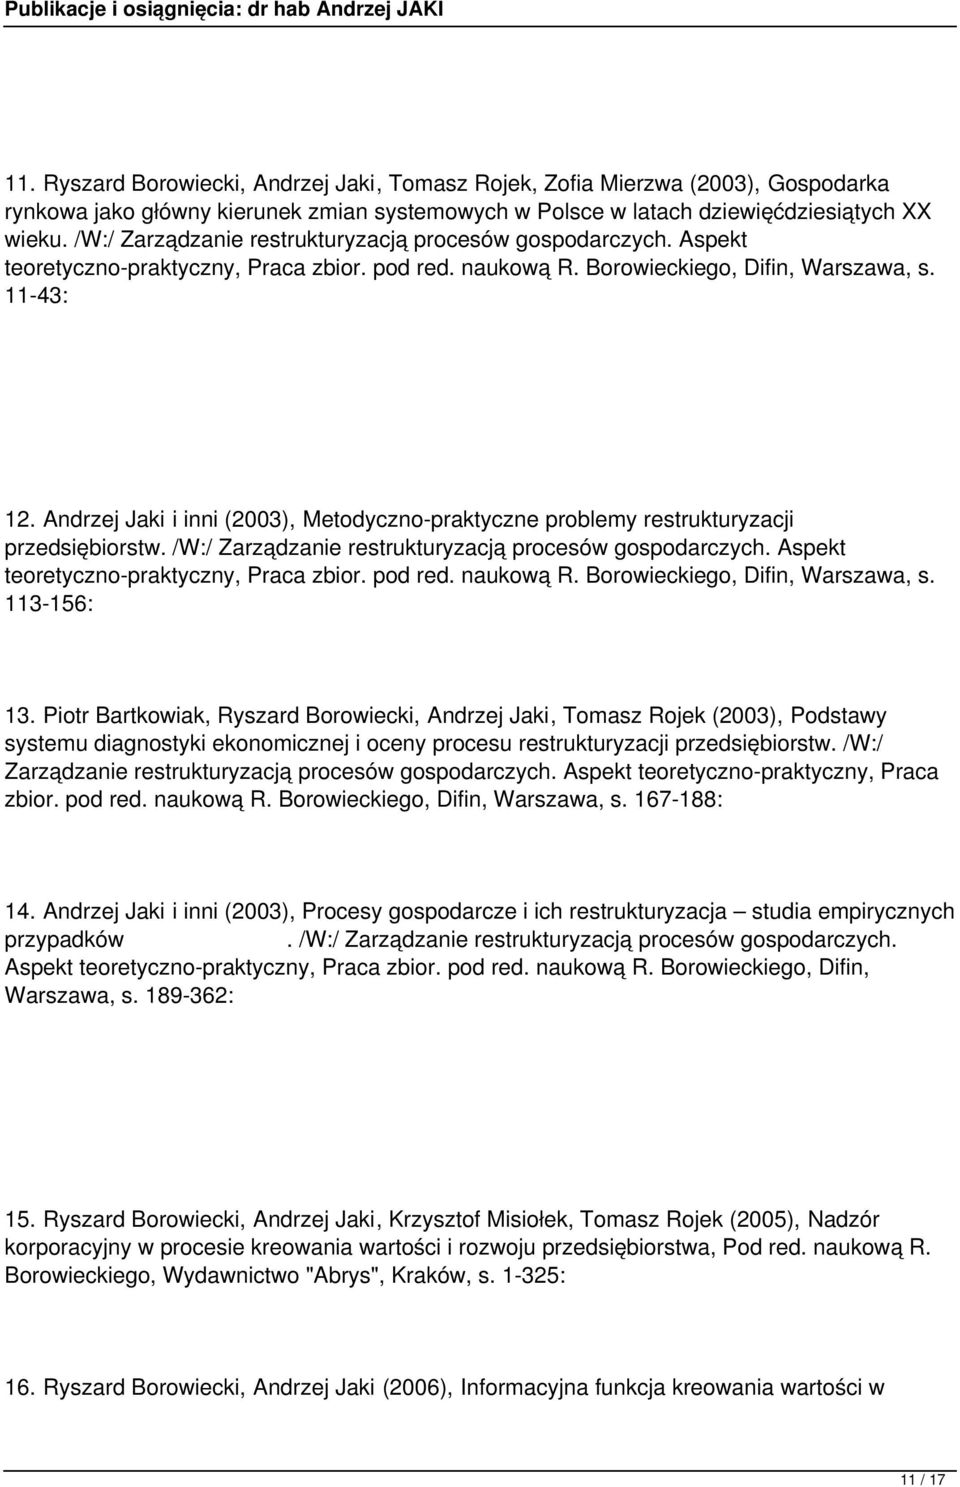 Andrzej Jaki i inni (2003), Metodyczno-praktyczne problemy restrukturyzacji przedsiębiorstw. /W:/ Zarządzanie restrukturyzacją procesów gospodarczych. Aspekt teoretyczno-praktyczny, Praca zbior.